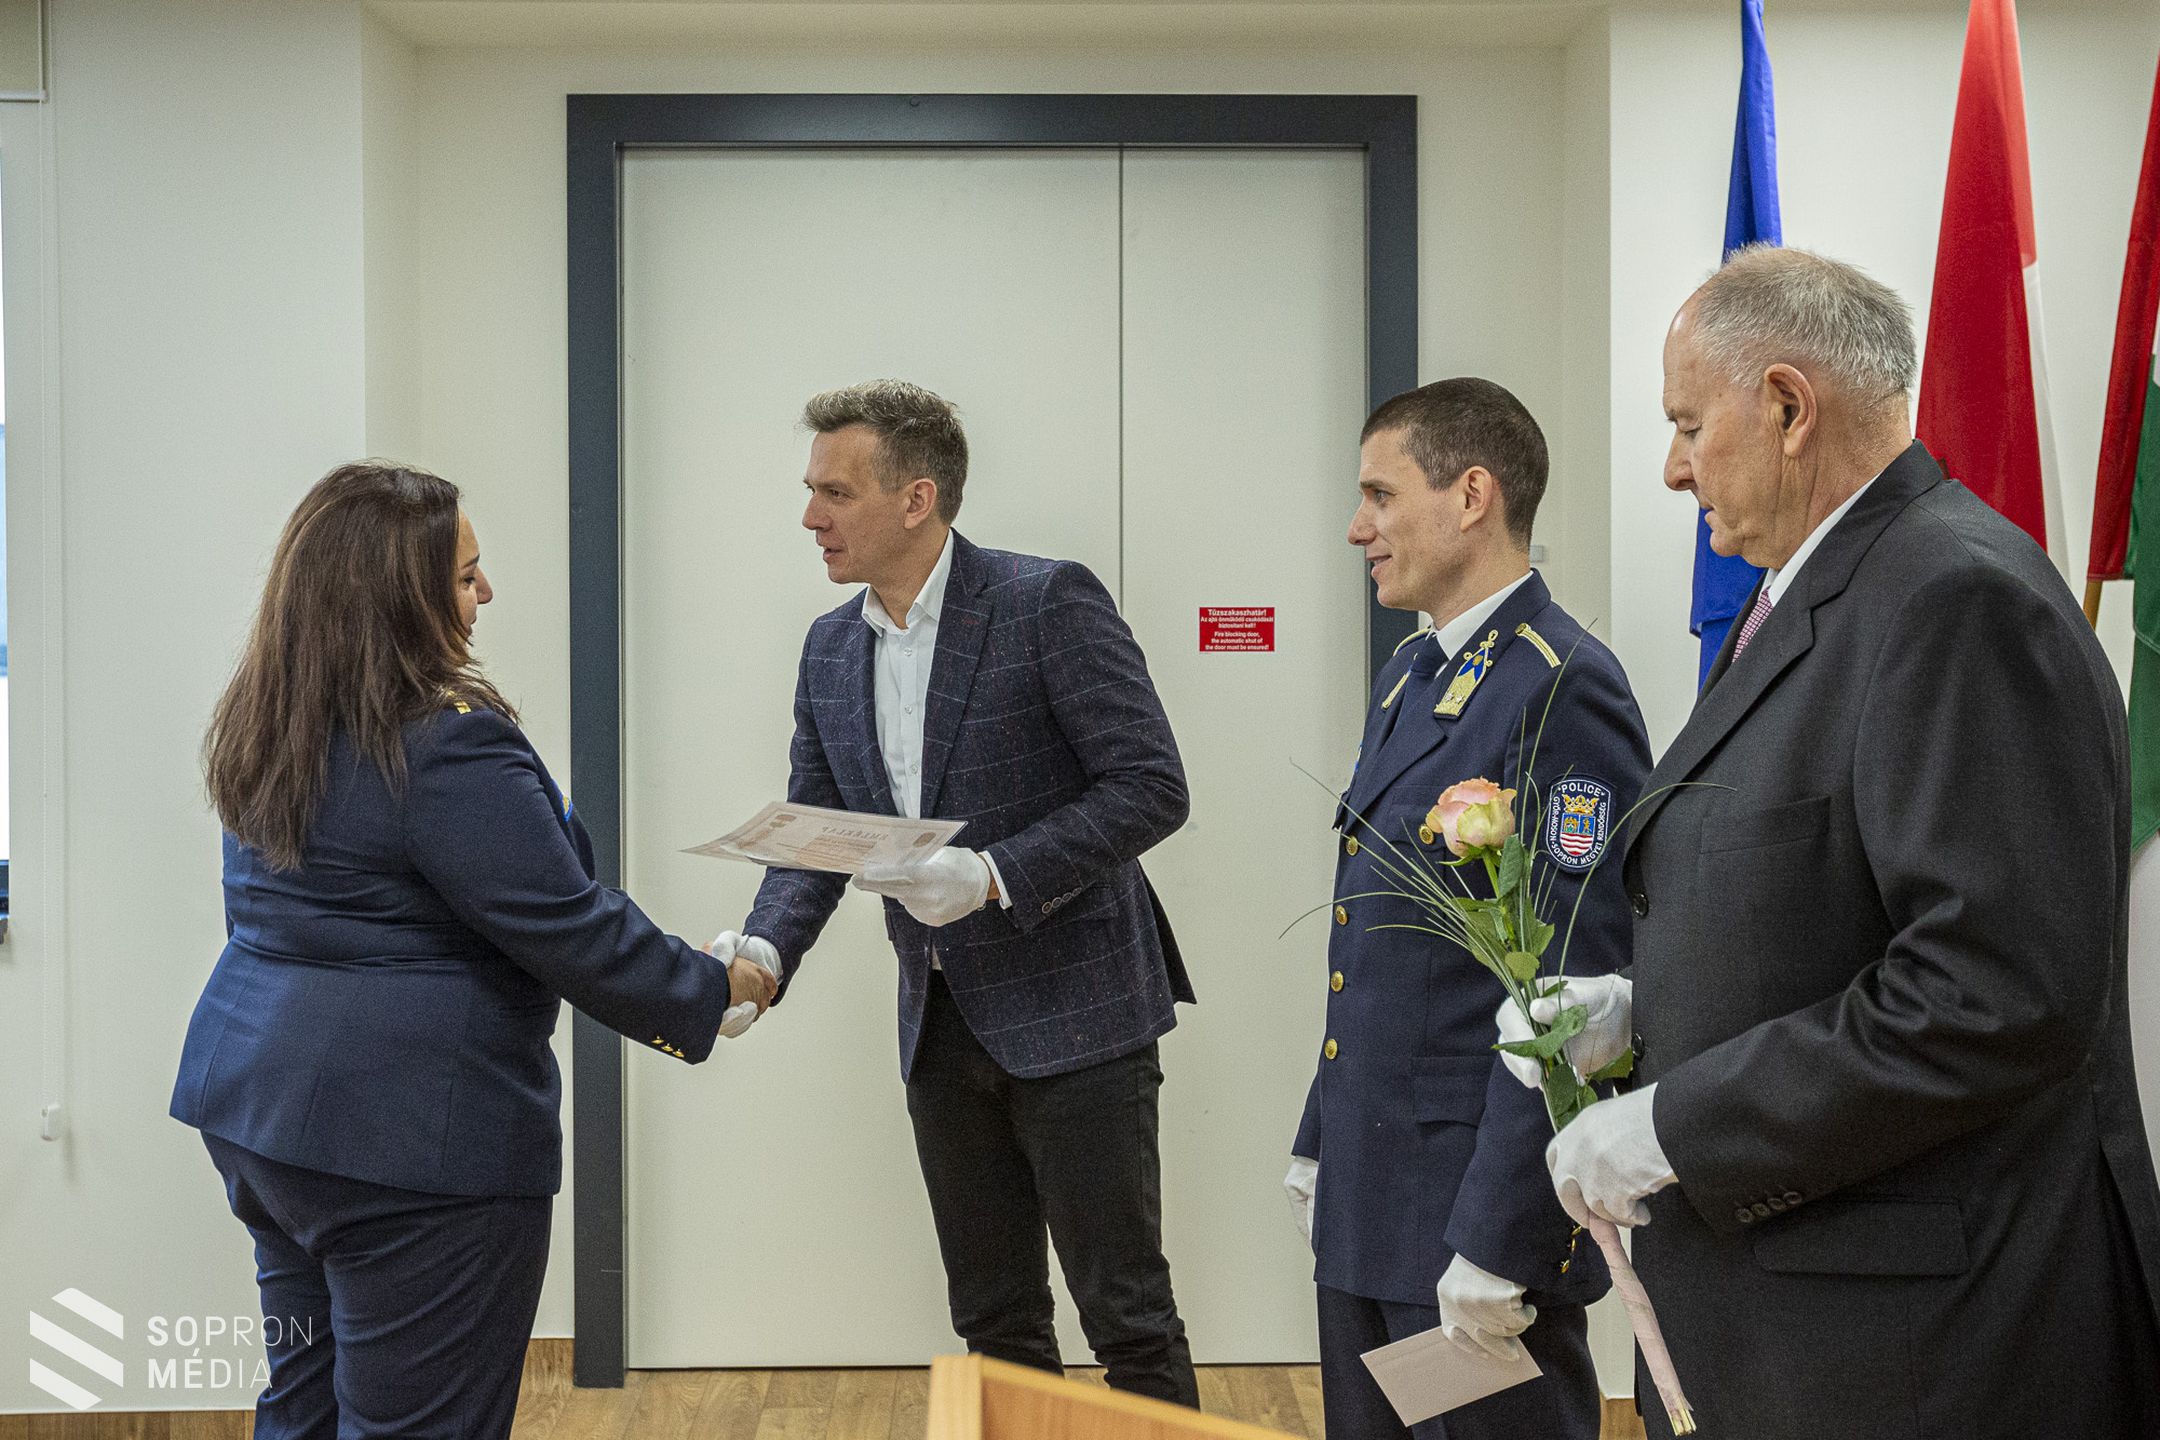 A Soproni Rendőrkapitányság munkatársait díjazták a rendészeti központban